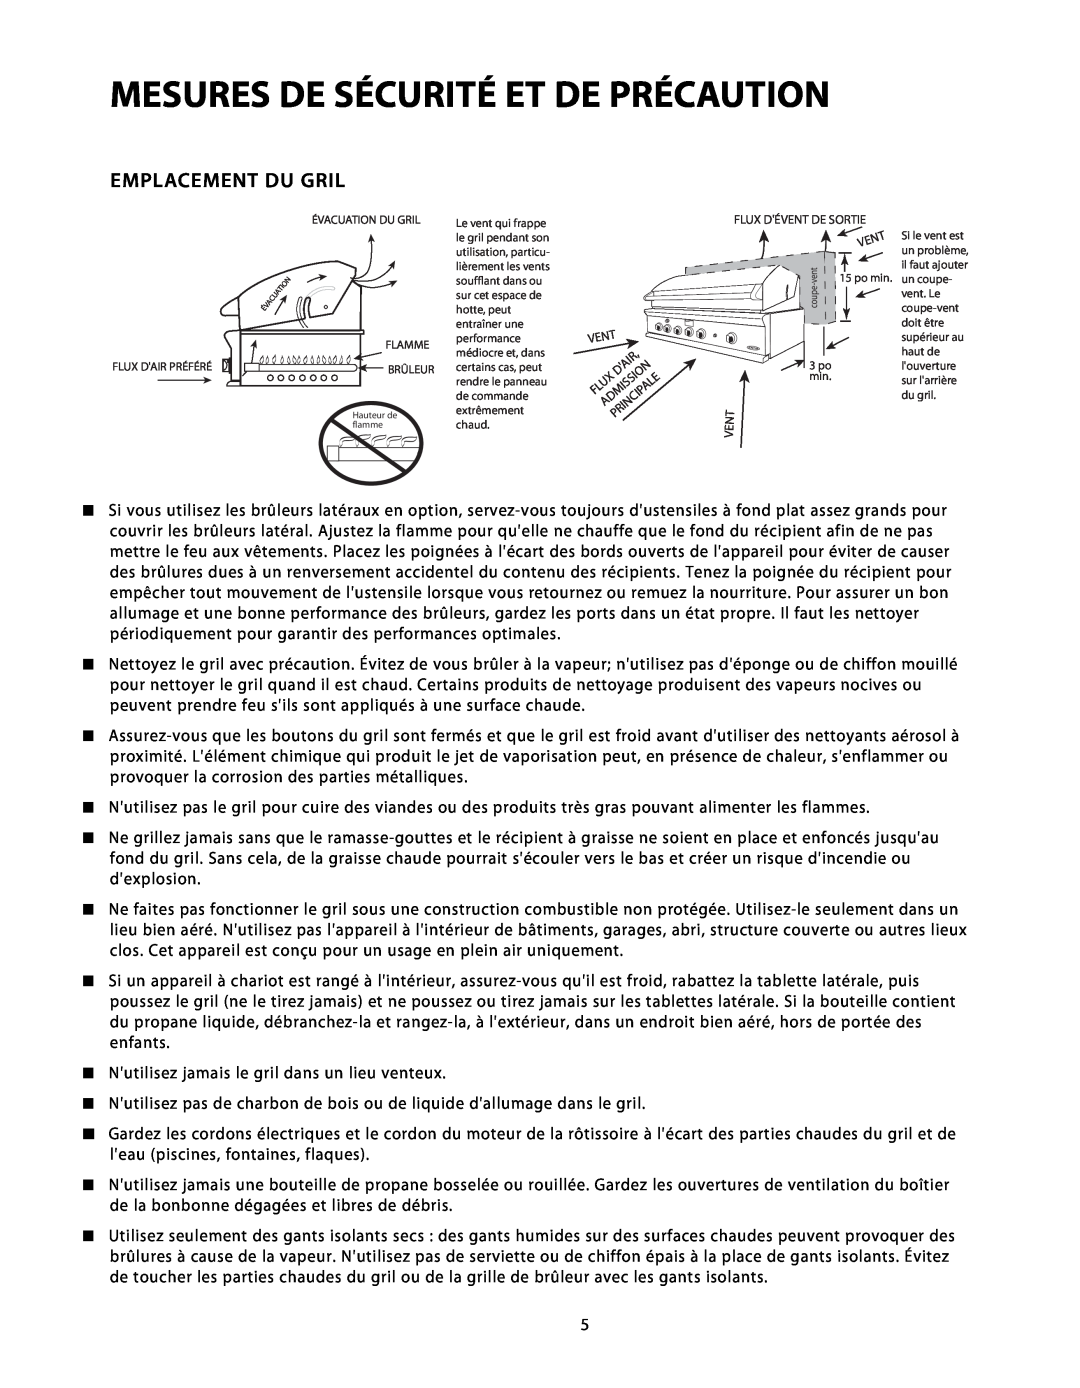 DCS BGB48-BQR, BGB48-BQAR manual Emplacement Du Gril, Mesures De Sécurité Et De Précaution 